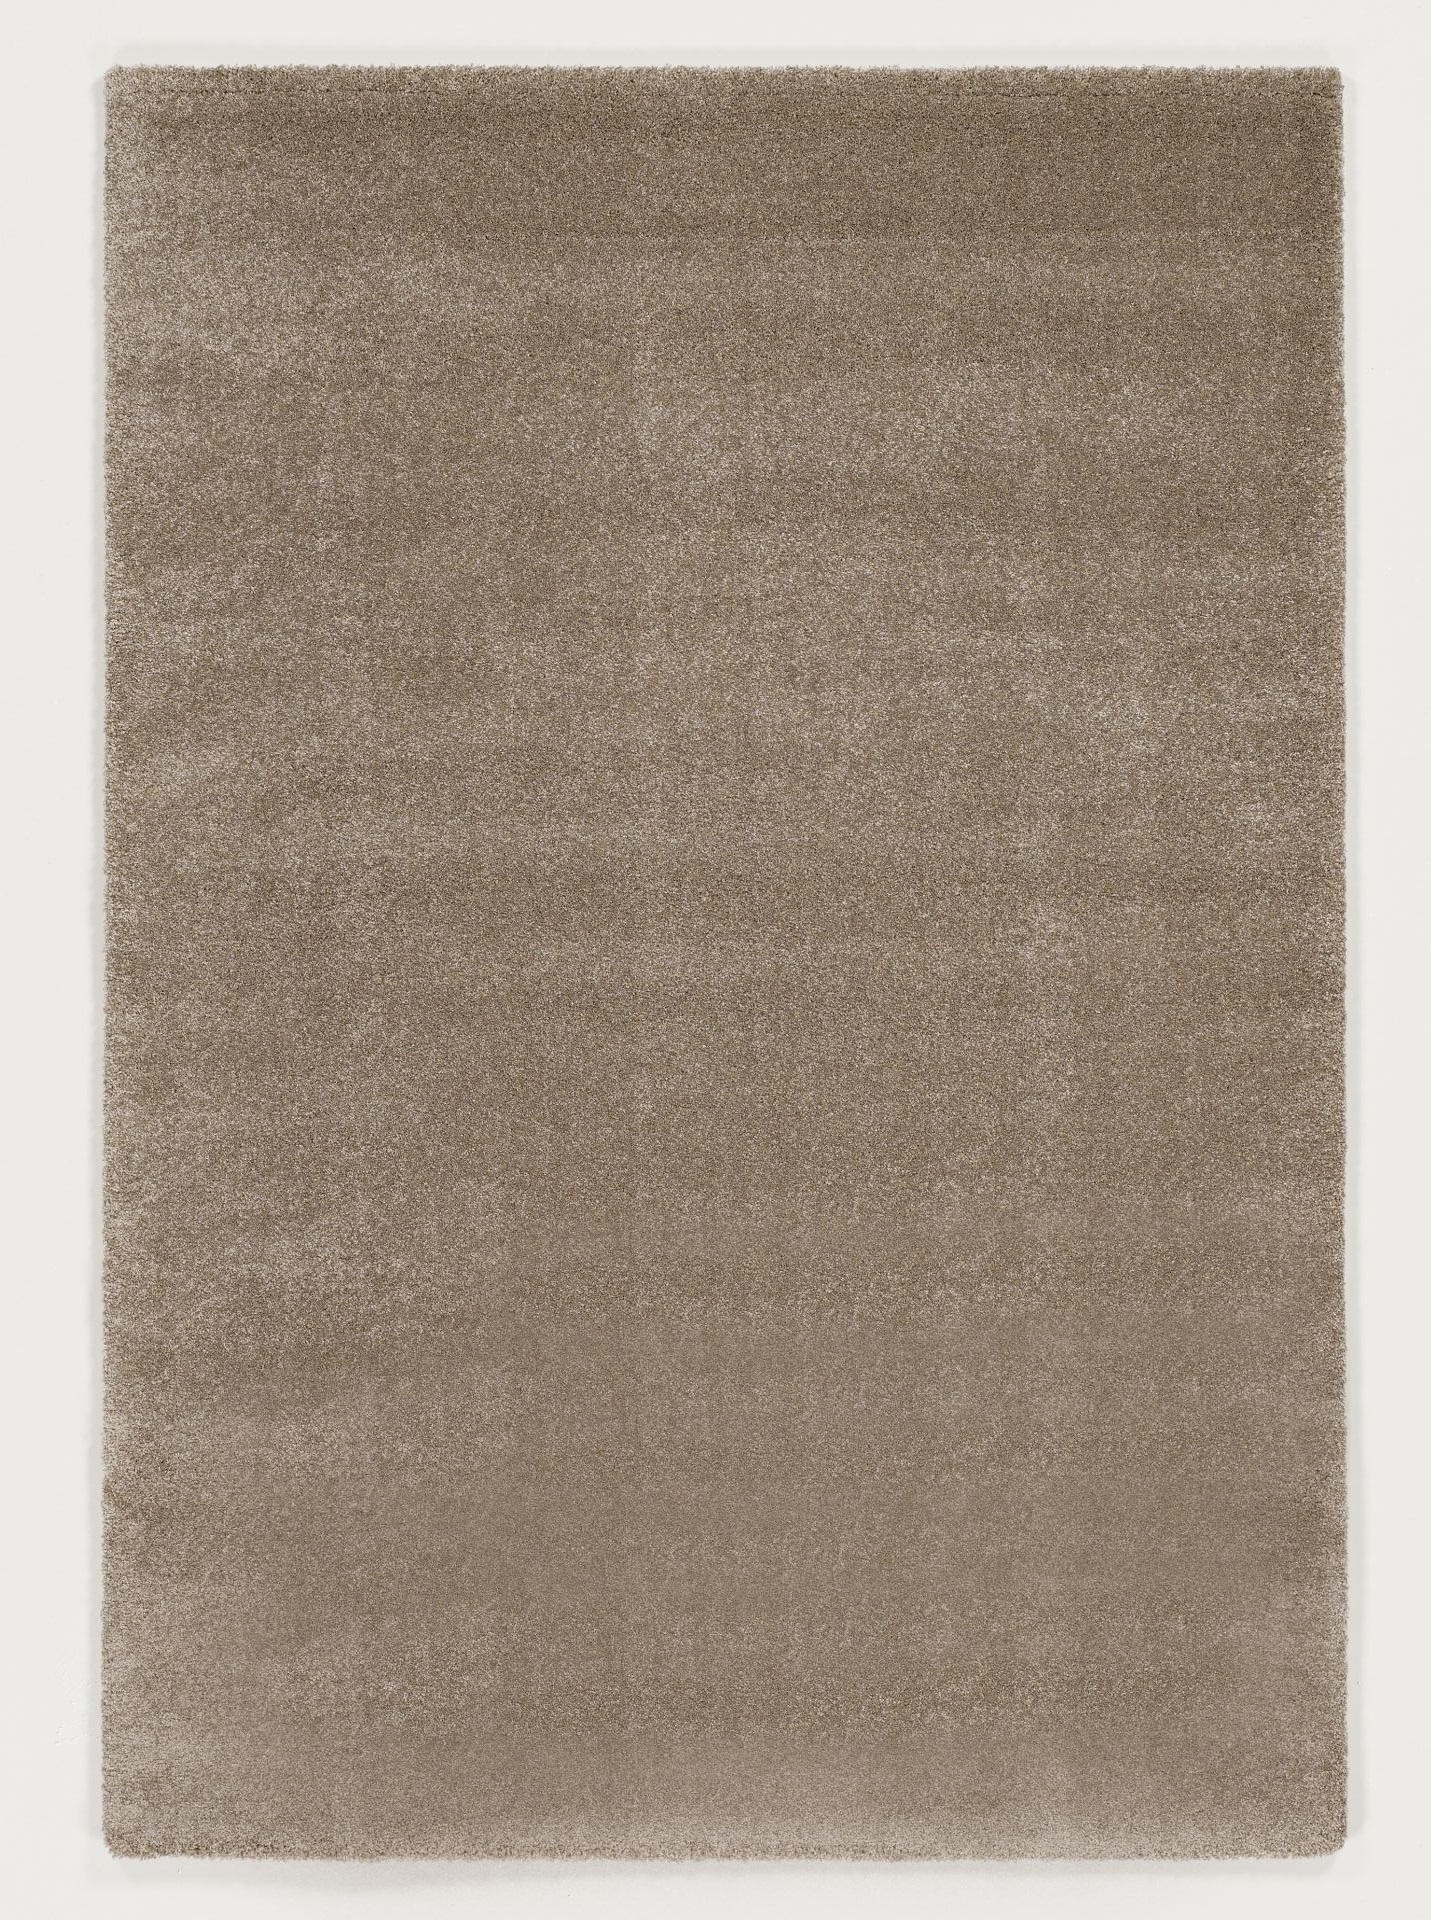 HOCHFLORTEPPICH  80/150 cm  gewebt  Beige   - Beige, Basics, Textil (80/150cm) - Novel